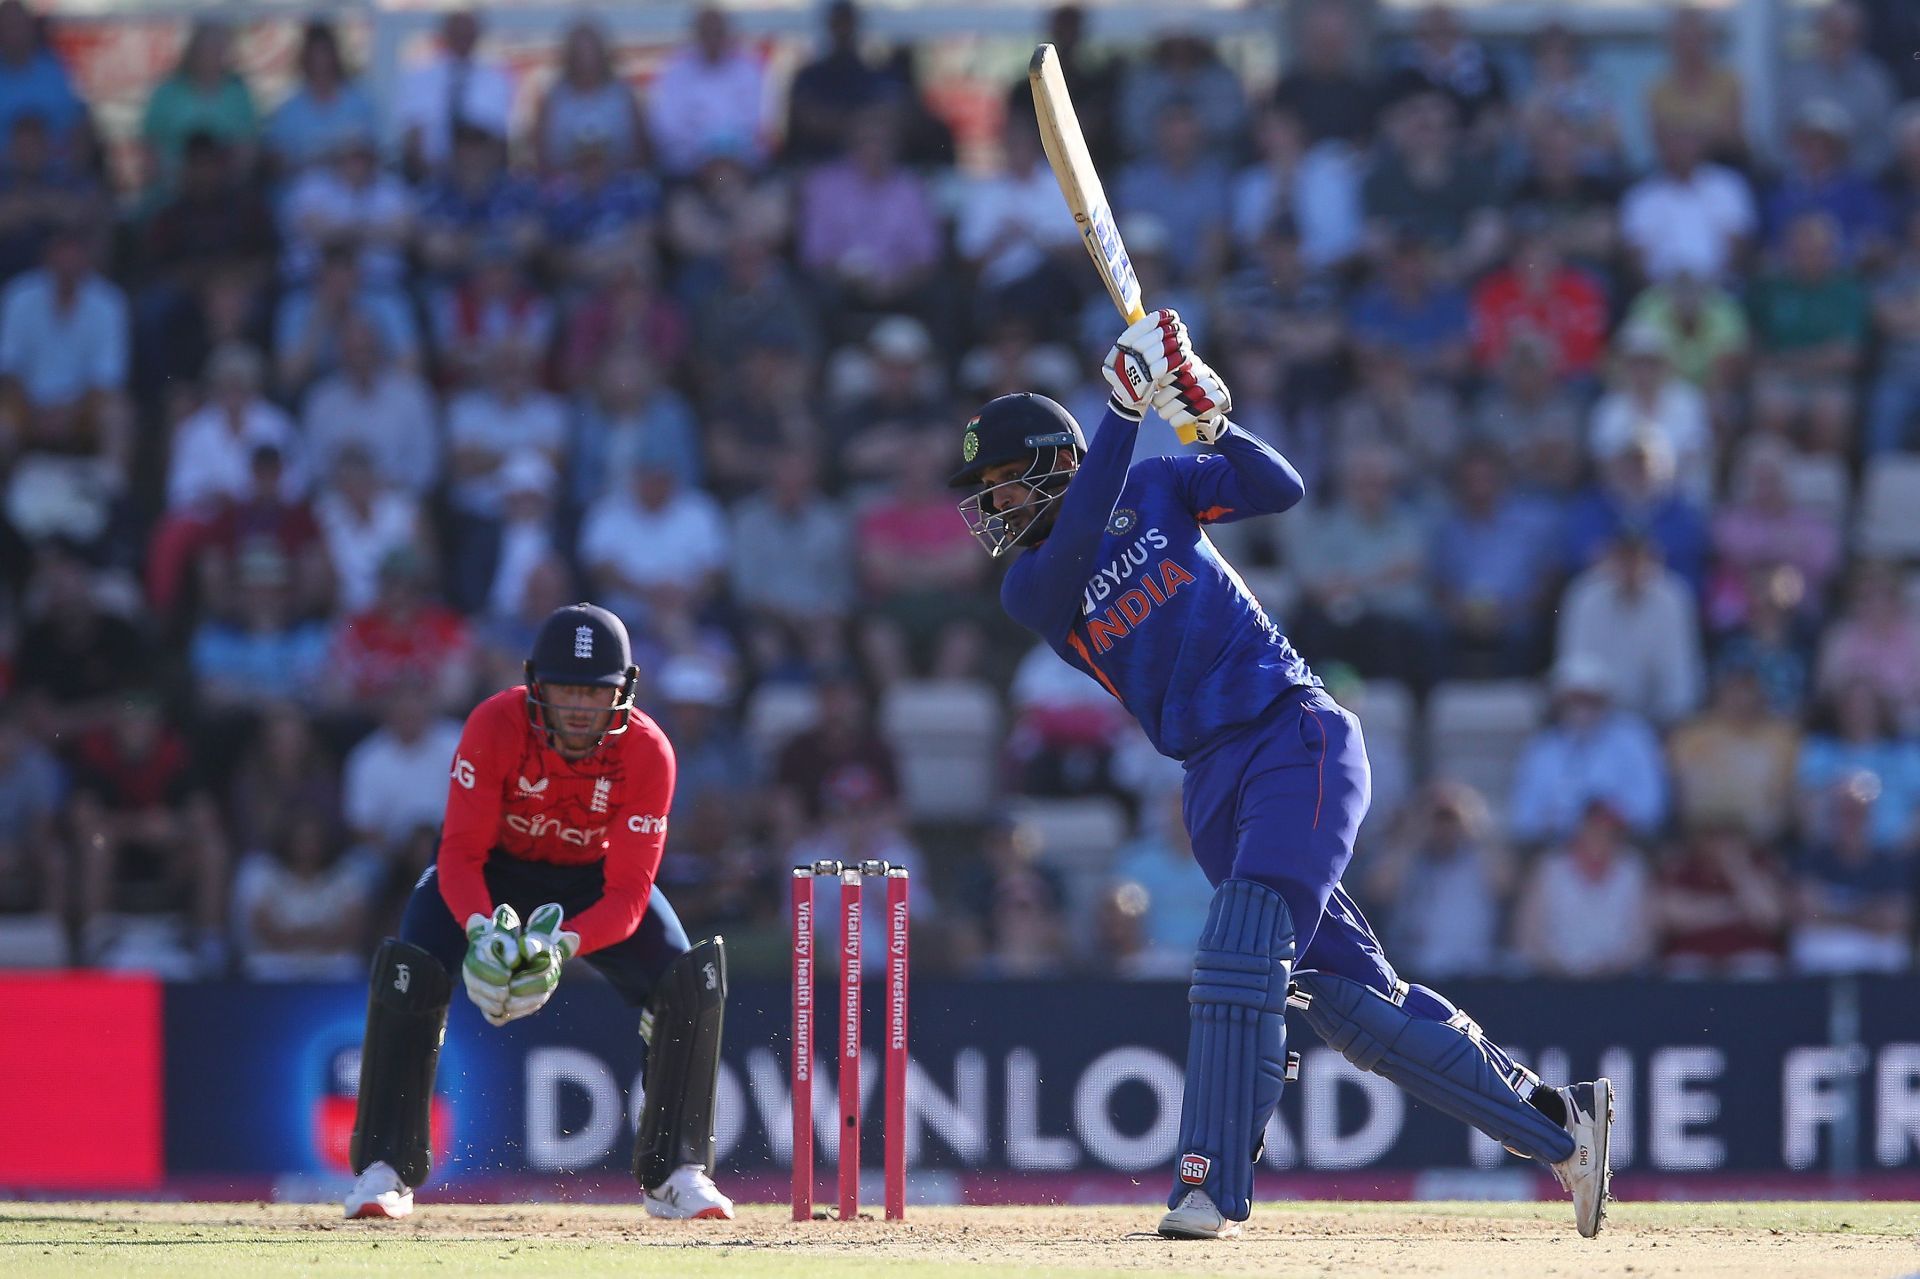 Deepak Hooda has scored one T20I century for the Men in Blue. (Image: Getty)